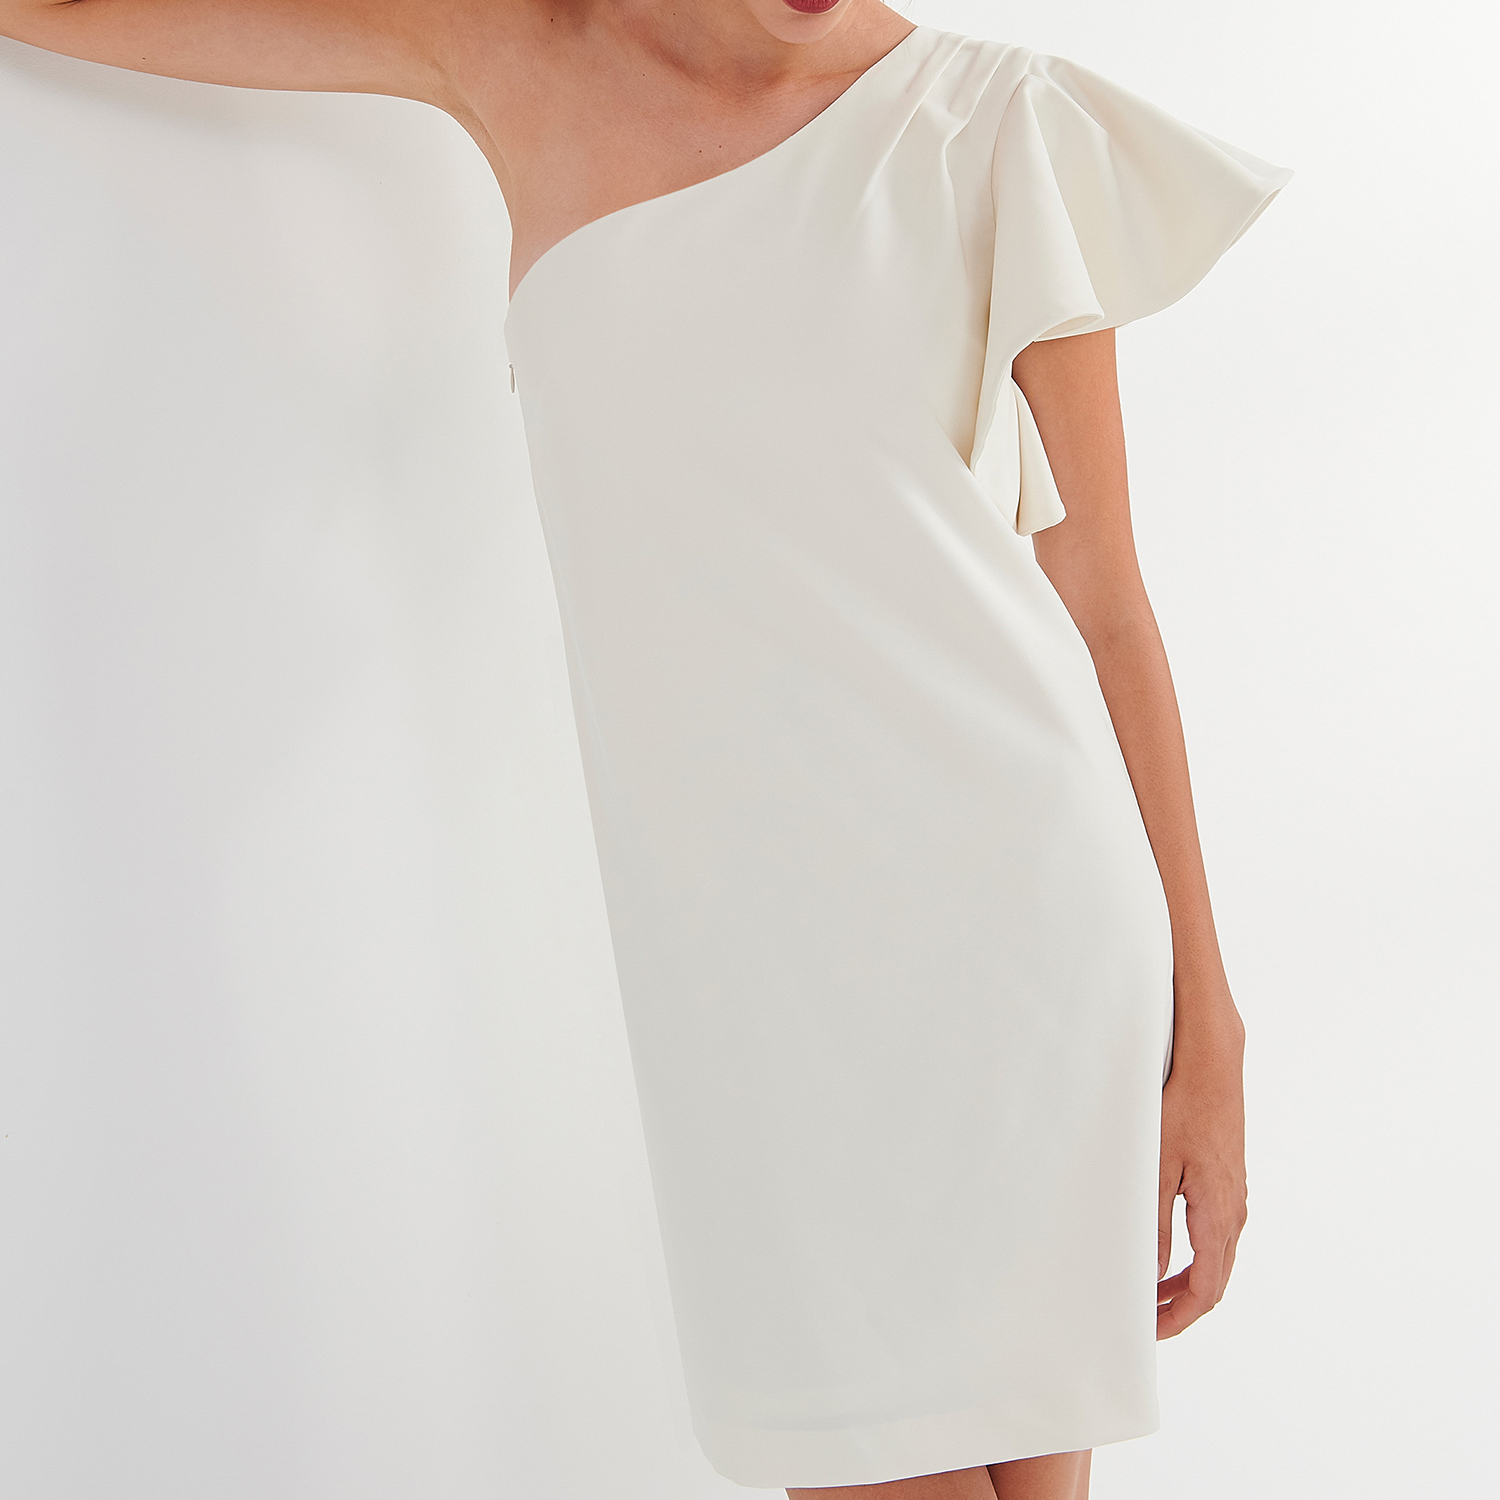 Γυναικεία/Ρούχα/Φορέματα/Μίνι ATTRATTIVO - Γυναικείο mini φόρεμα ATTRATTIVO λευκό